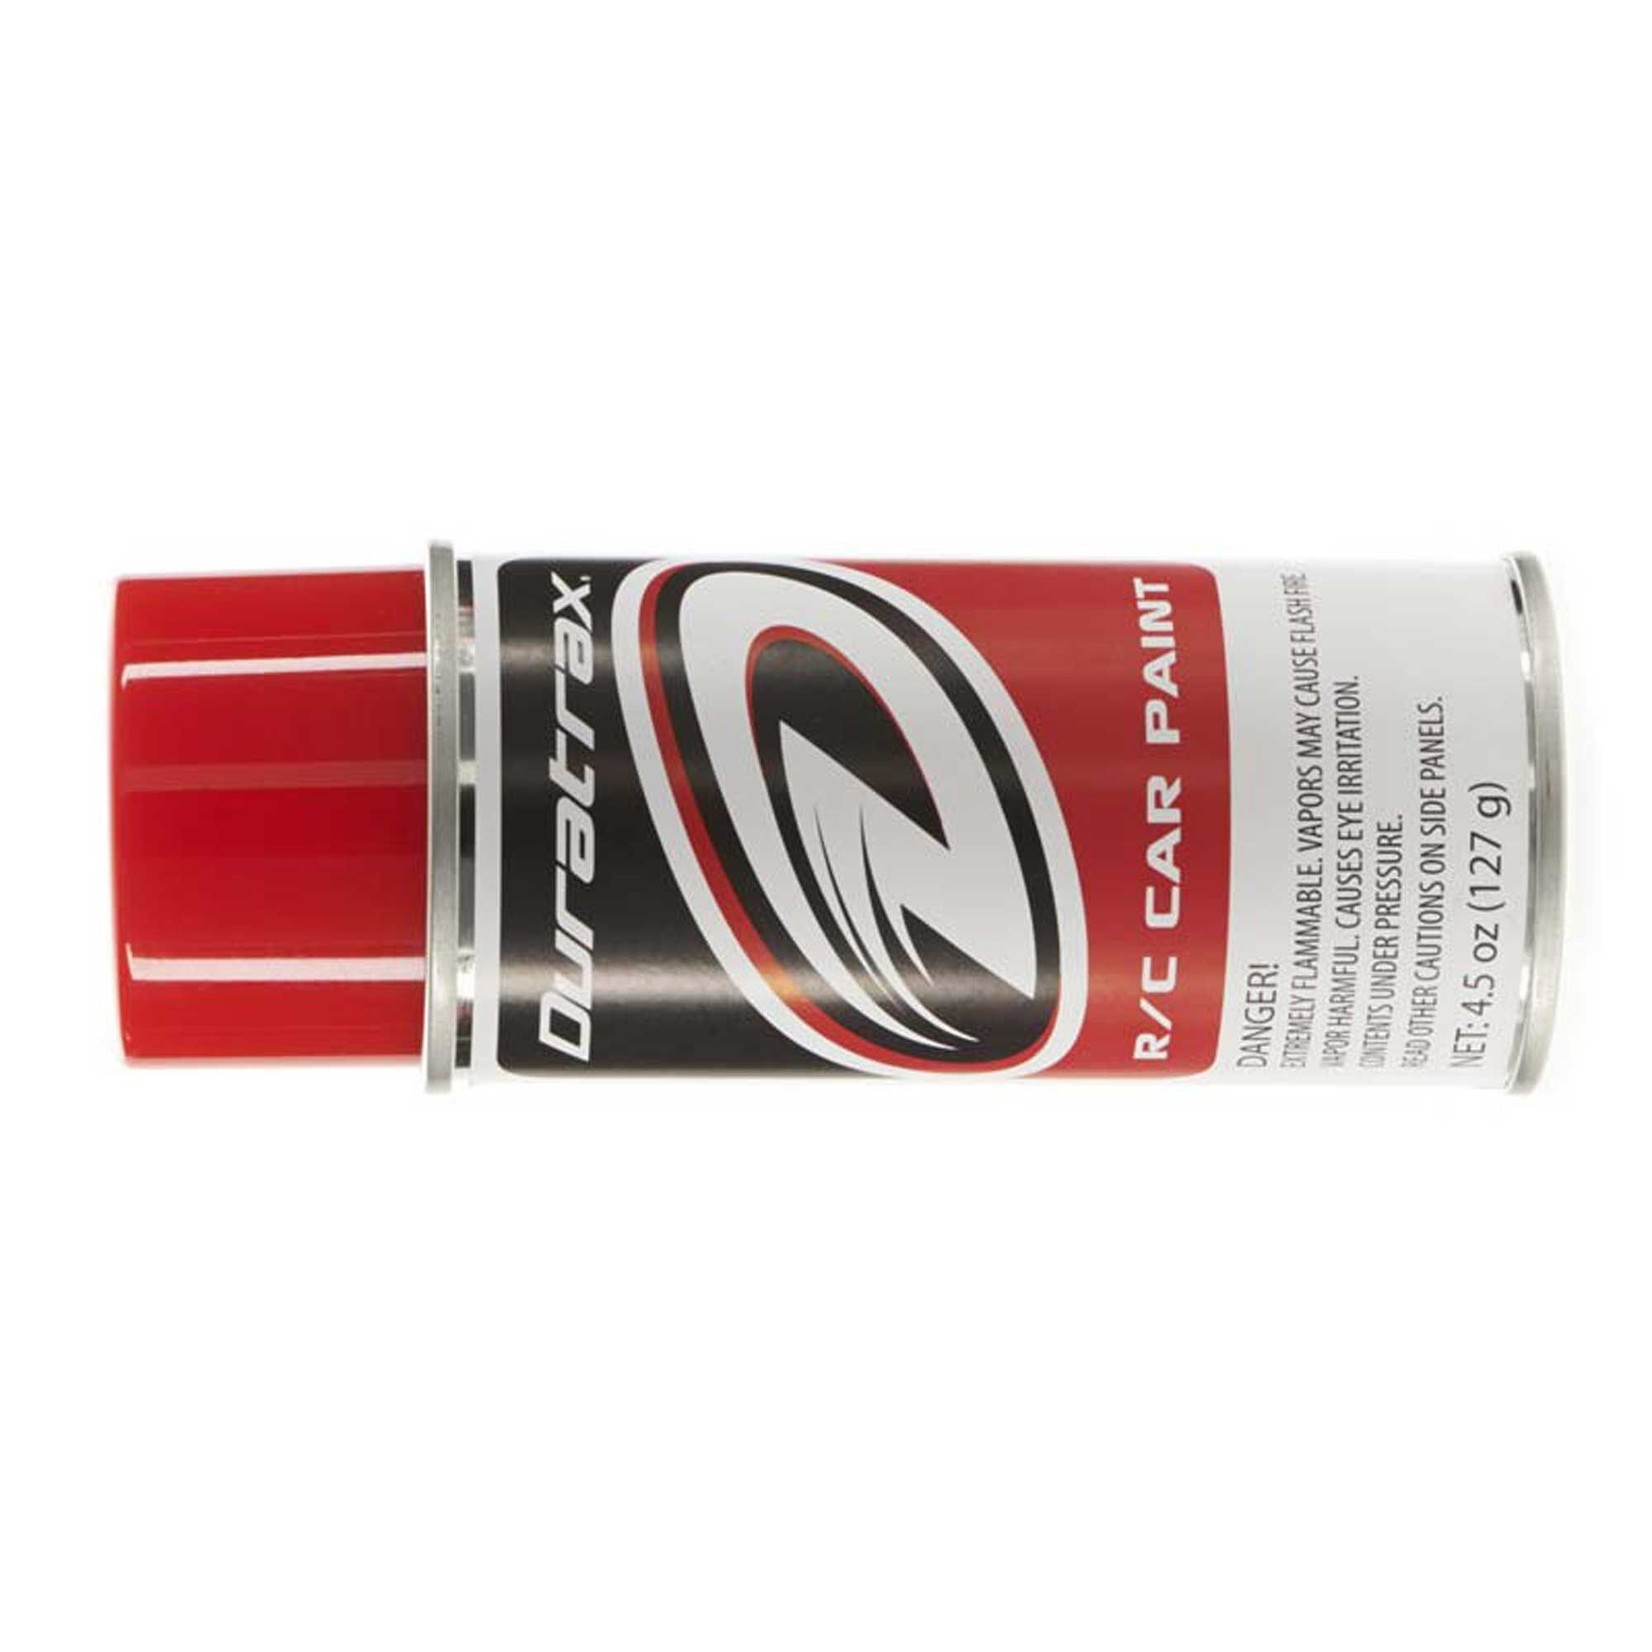 Duratrax Polycarb Spray, Bright Red, 4.5 oz